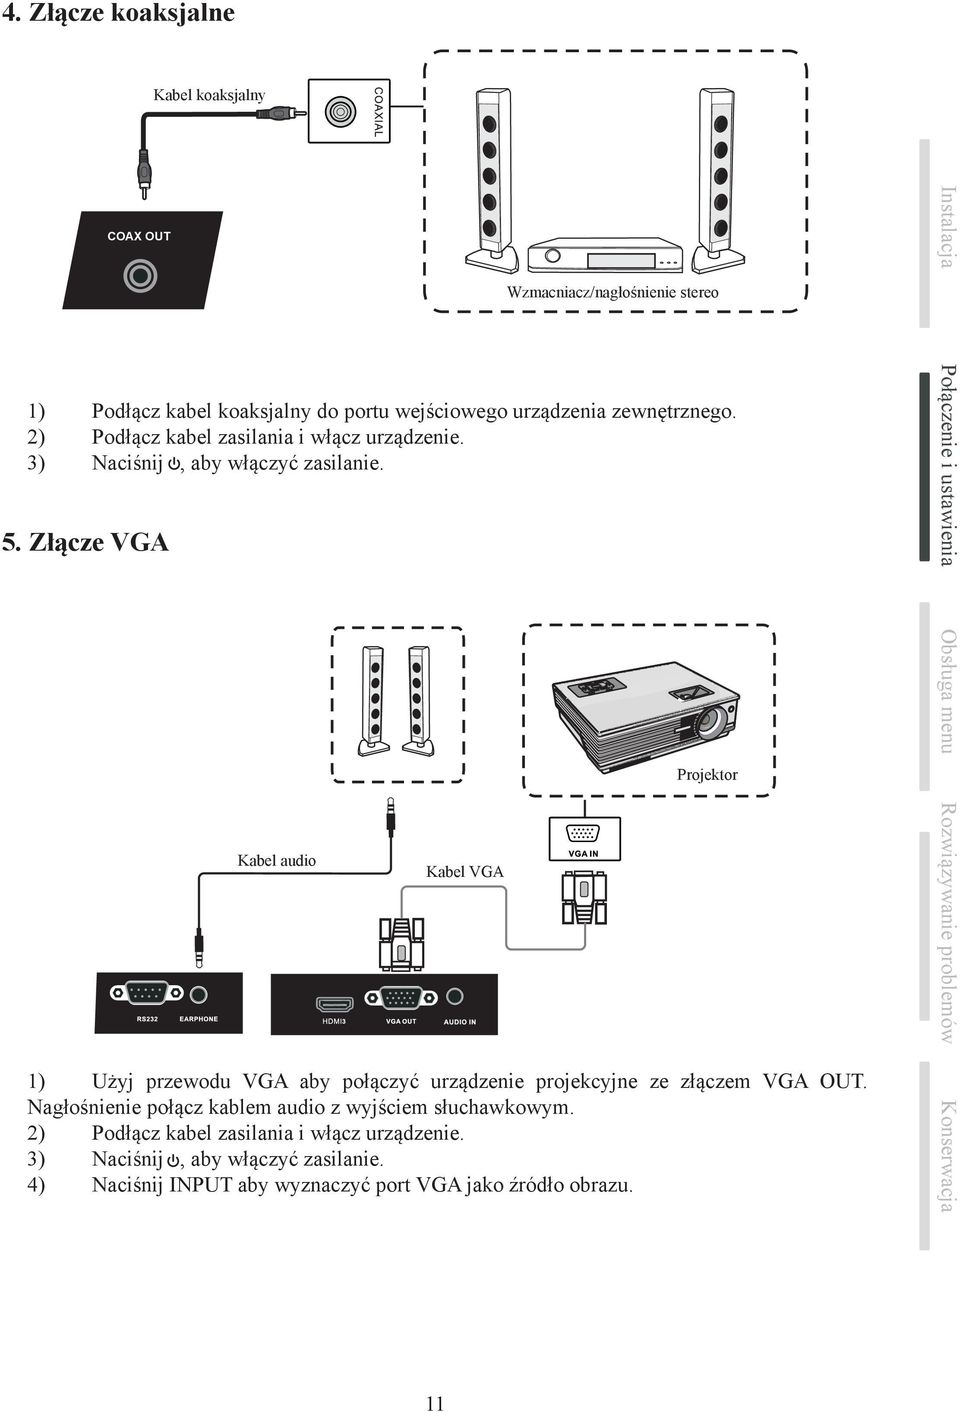 Złącze VGA Kabel audio Kabel VGA Wzmacniacz/nagłośnienie stereo Projektor 1) Użyj przewodu VGA aby połączyć urządzenie projekcyjne ze złączem VGA OUT.